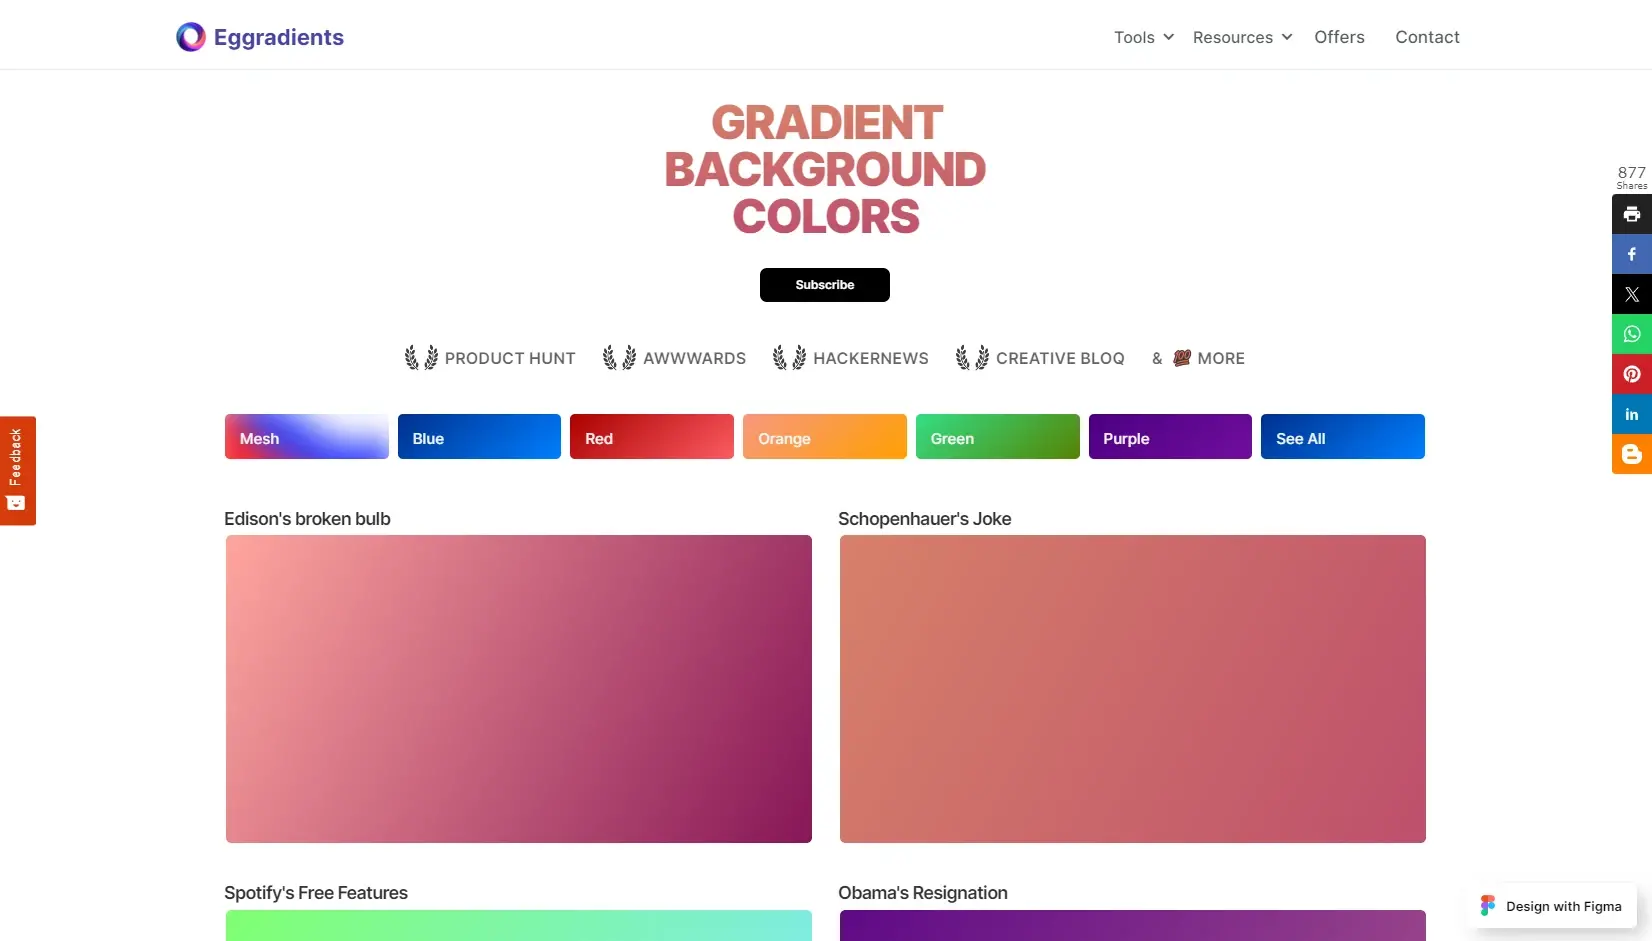 Blogduwebdesign outils design generateurs degrades couleurs en ligne eggradients